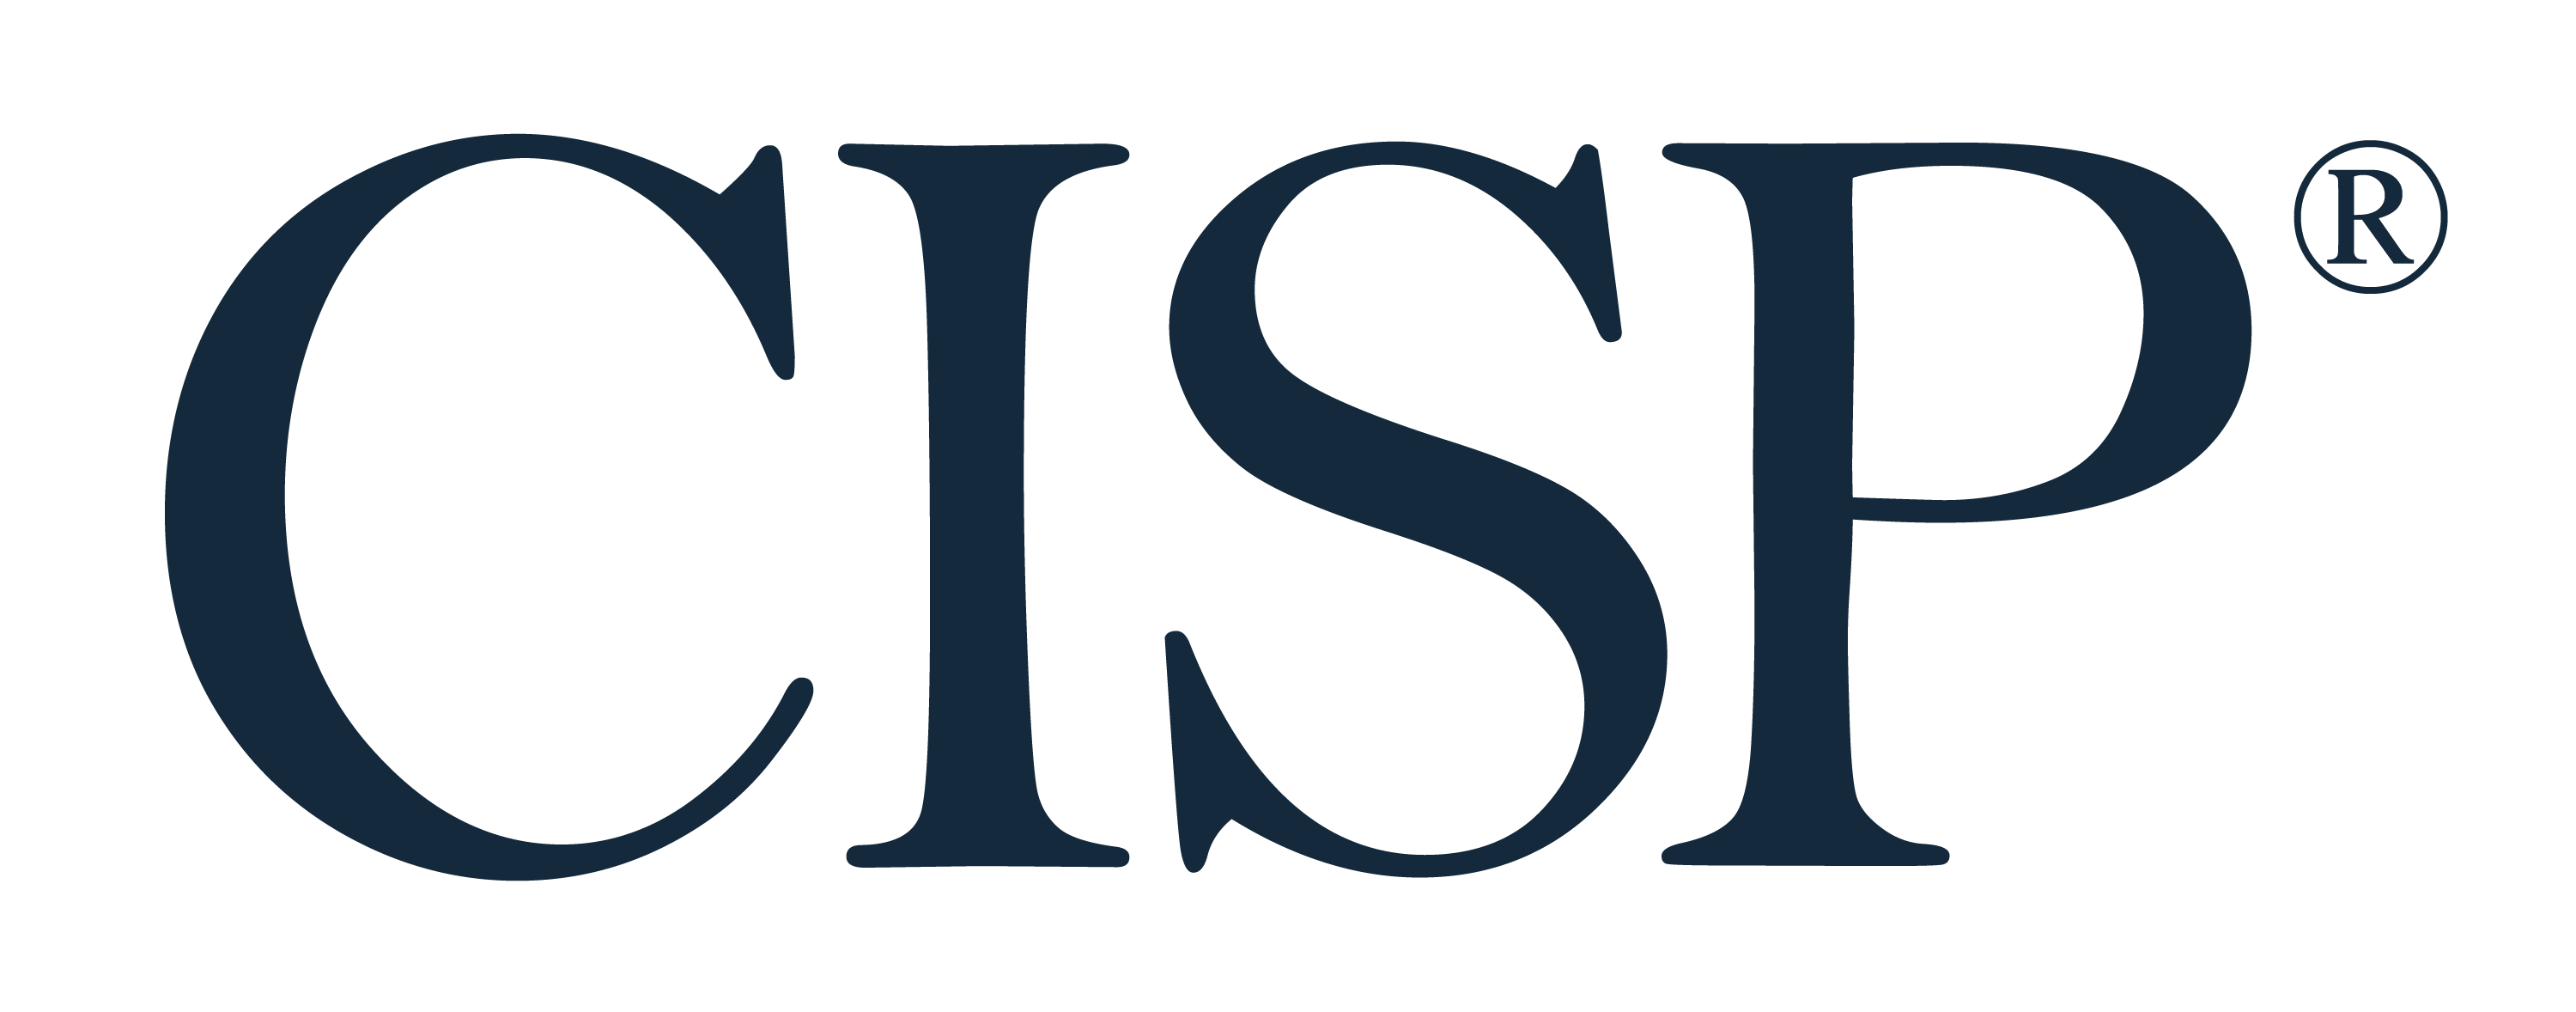 Cisp Logo